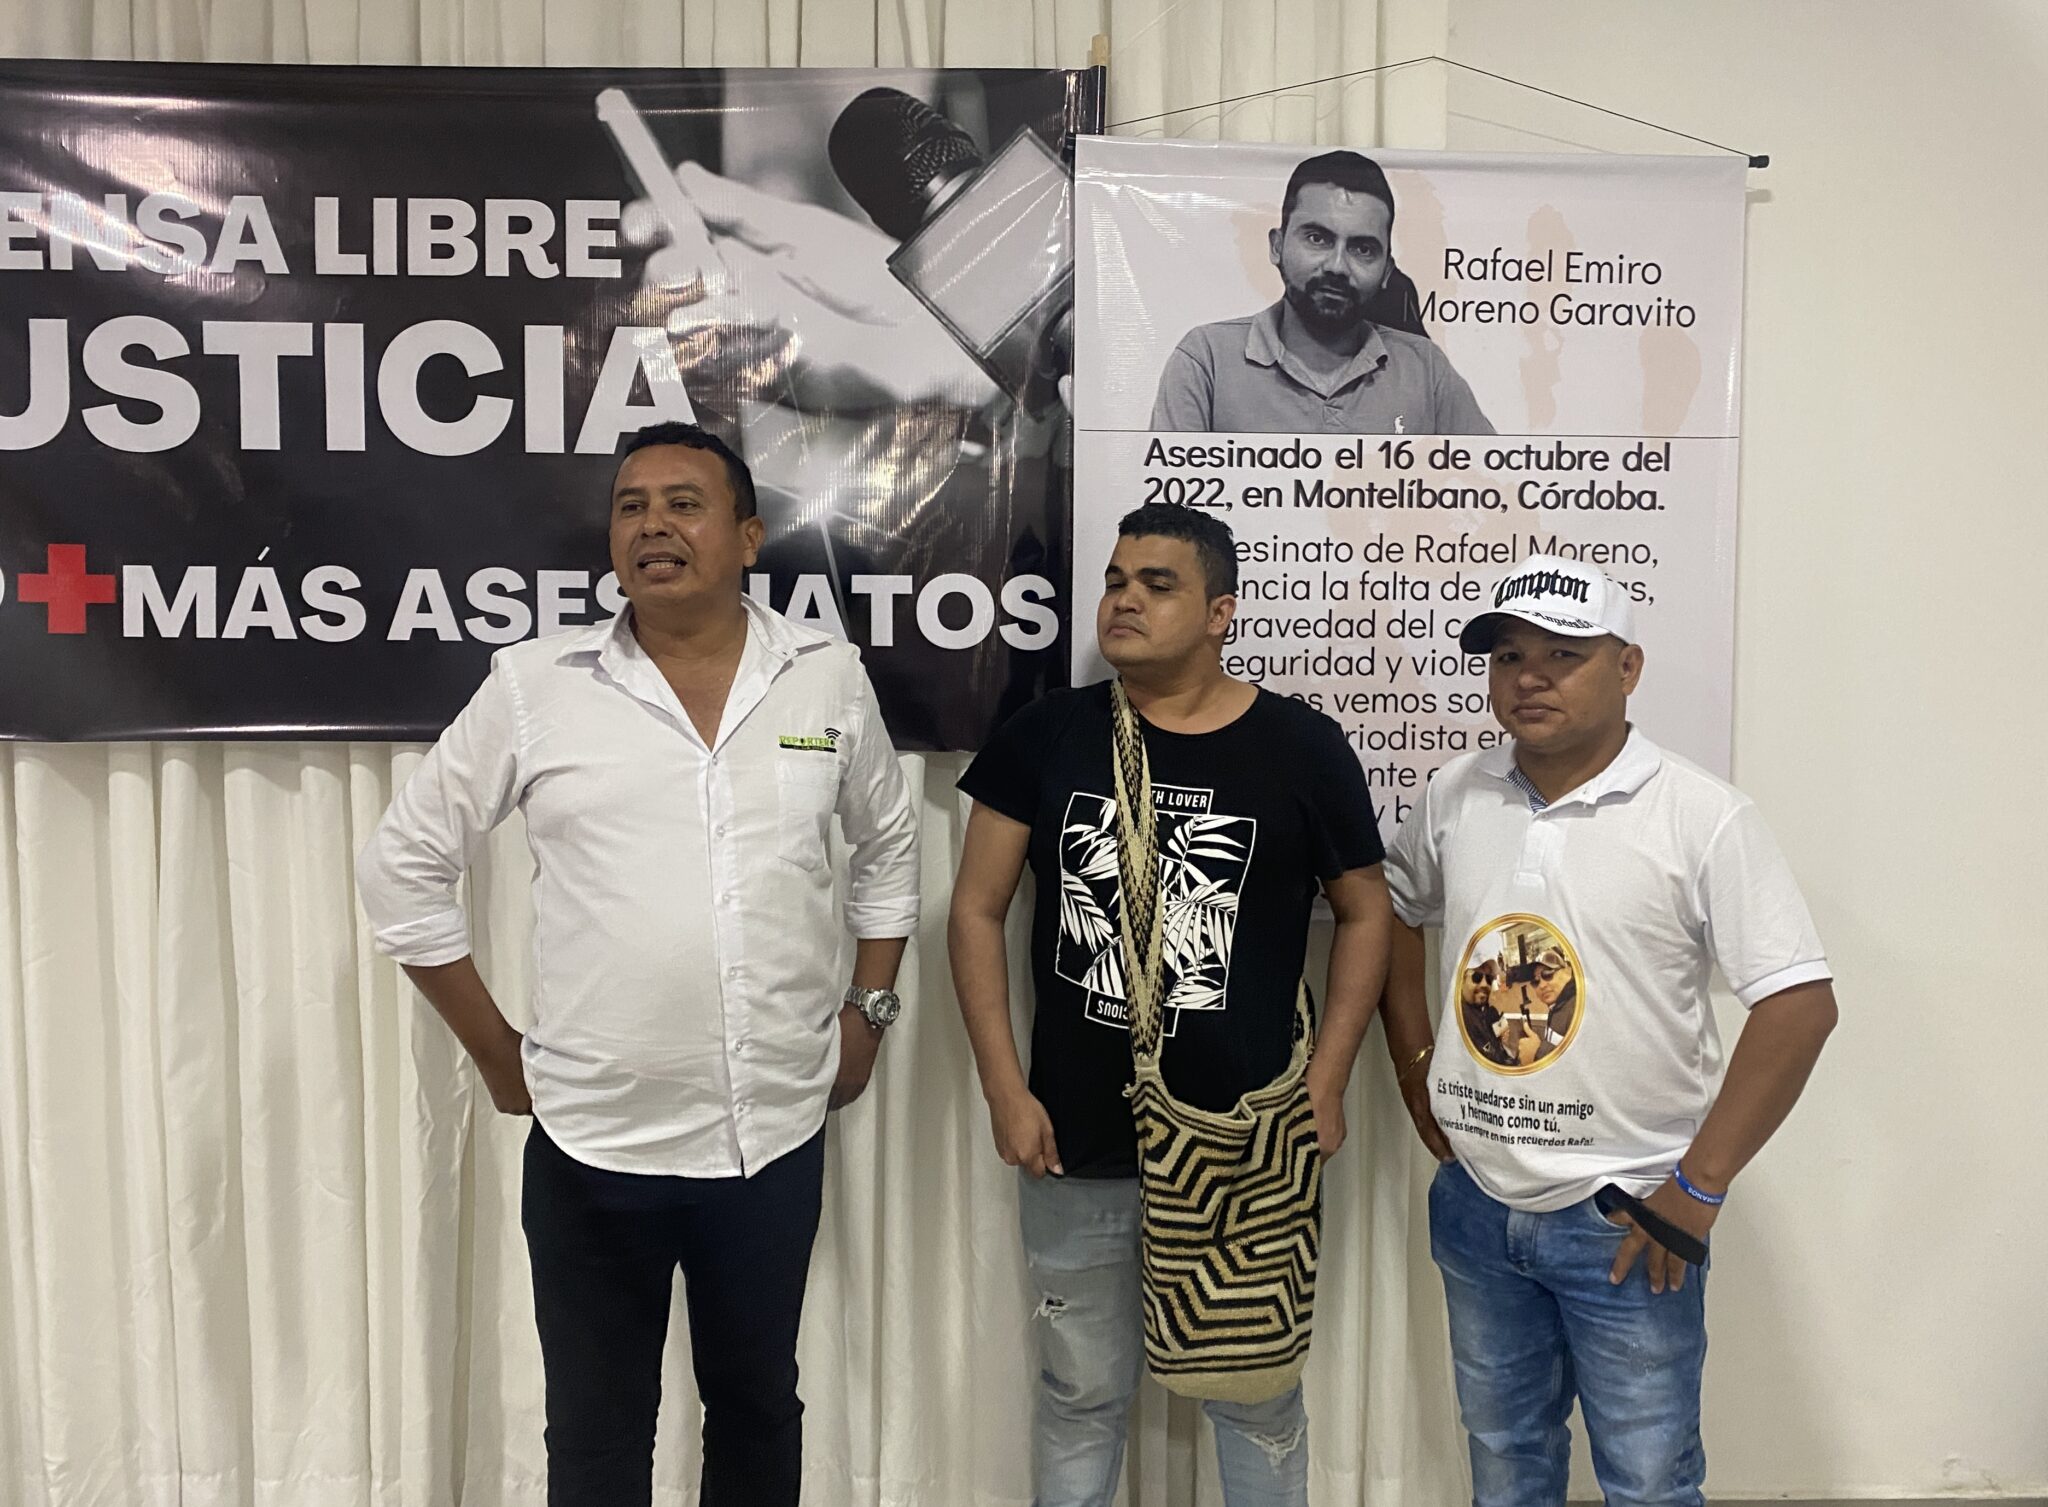 De izquierda a derecha, los periodistas Walter Álvarez, Yamir Pico y Organis Cuadrado. Crédito: Jeanneth Valdivieso.